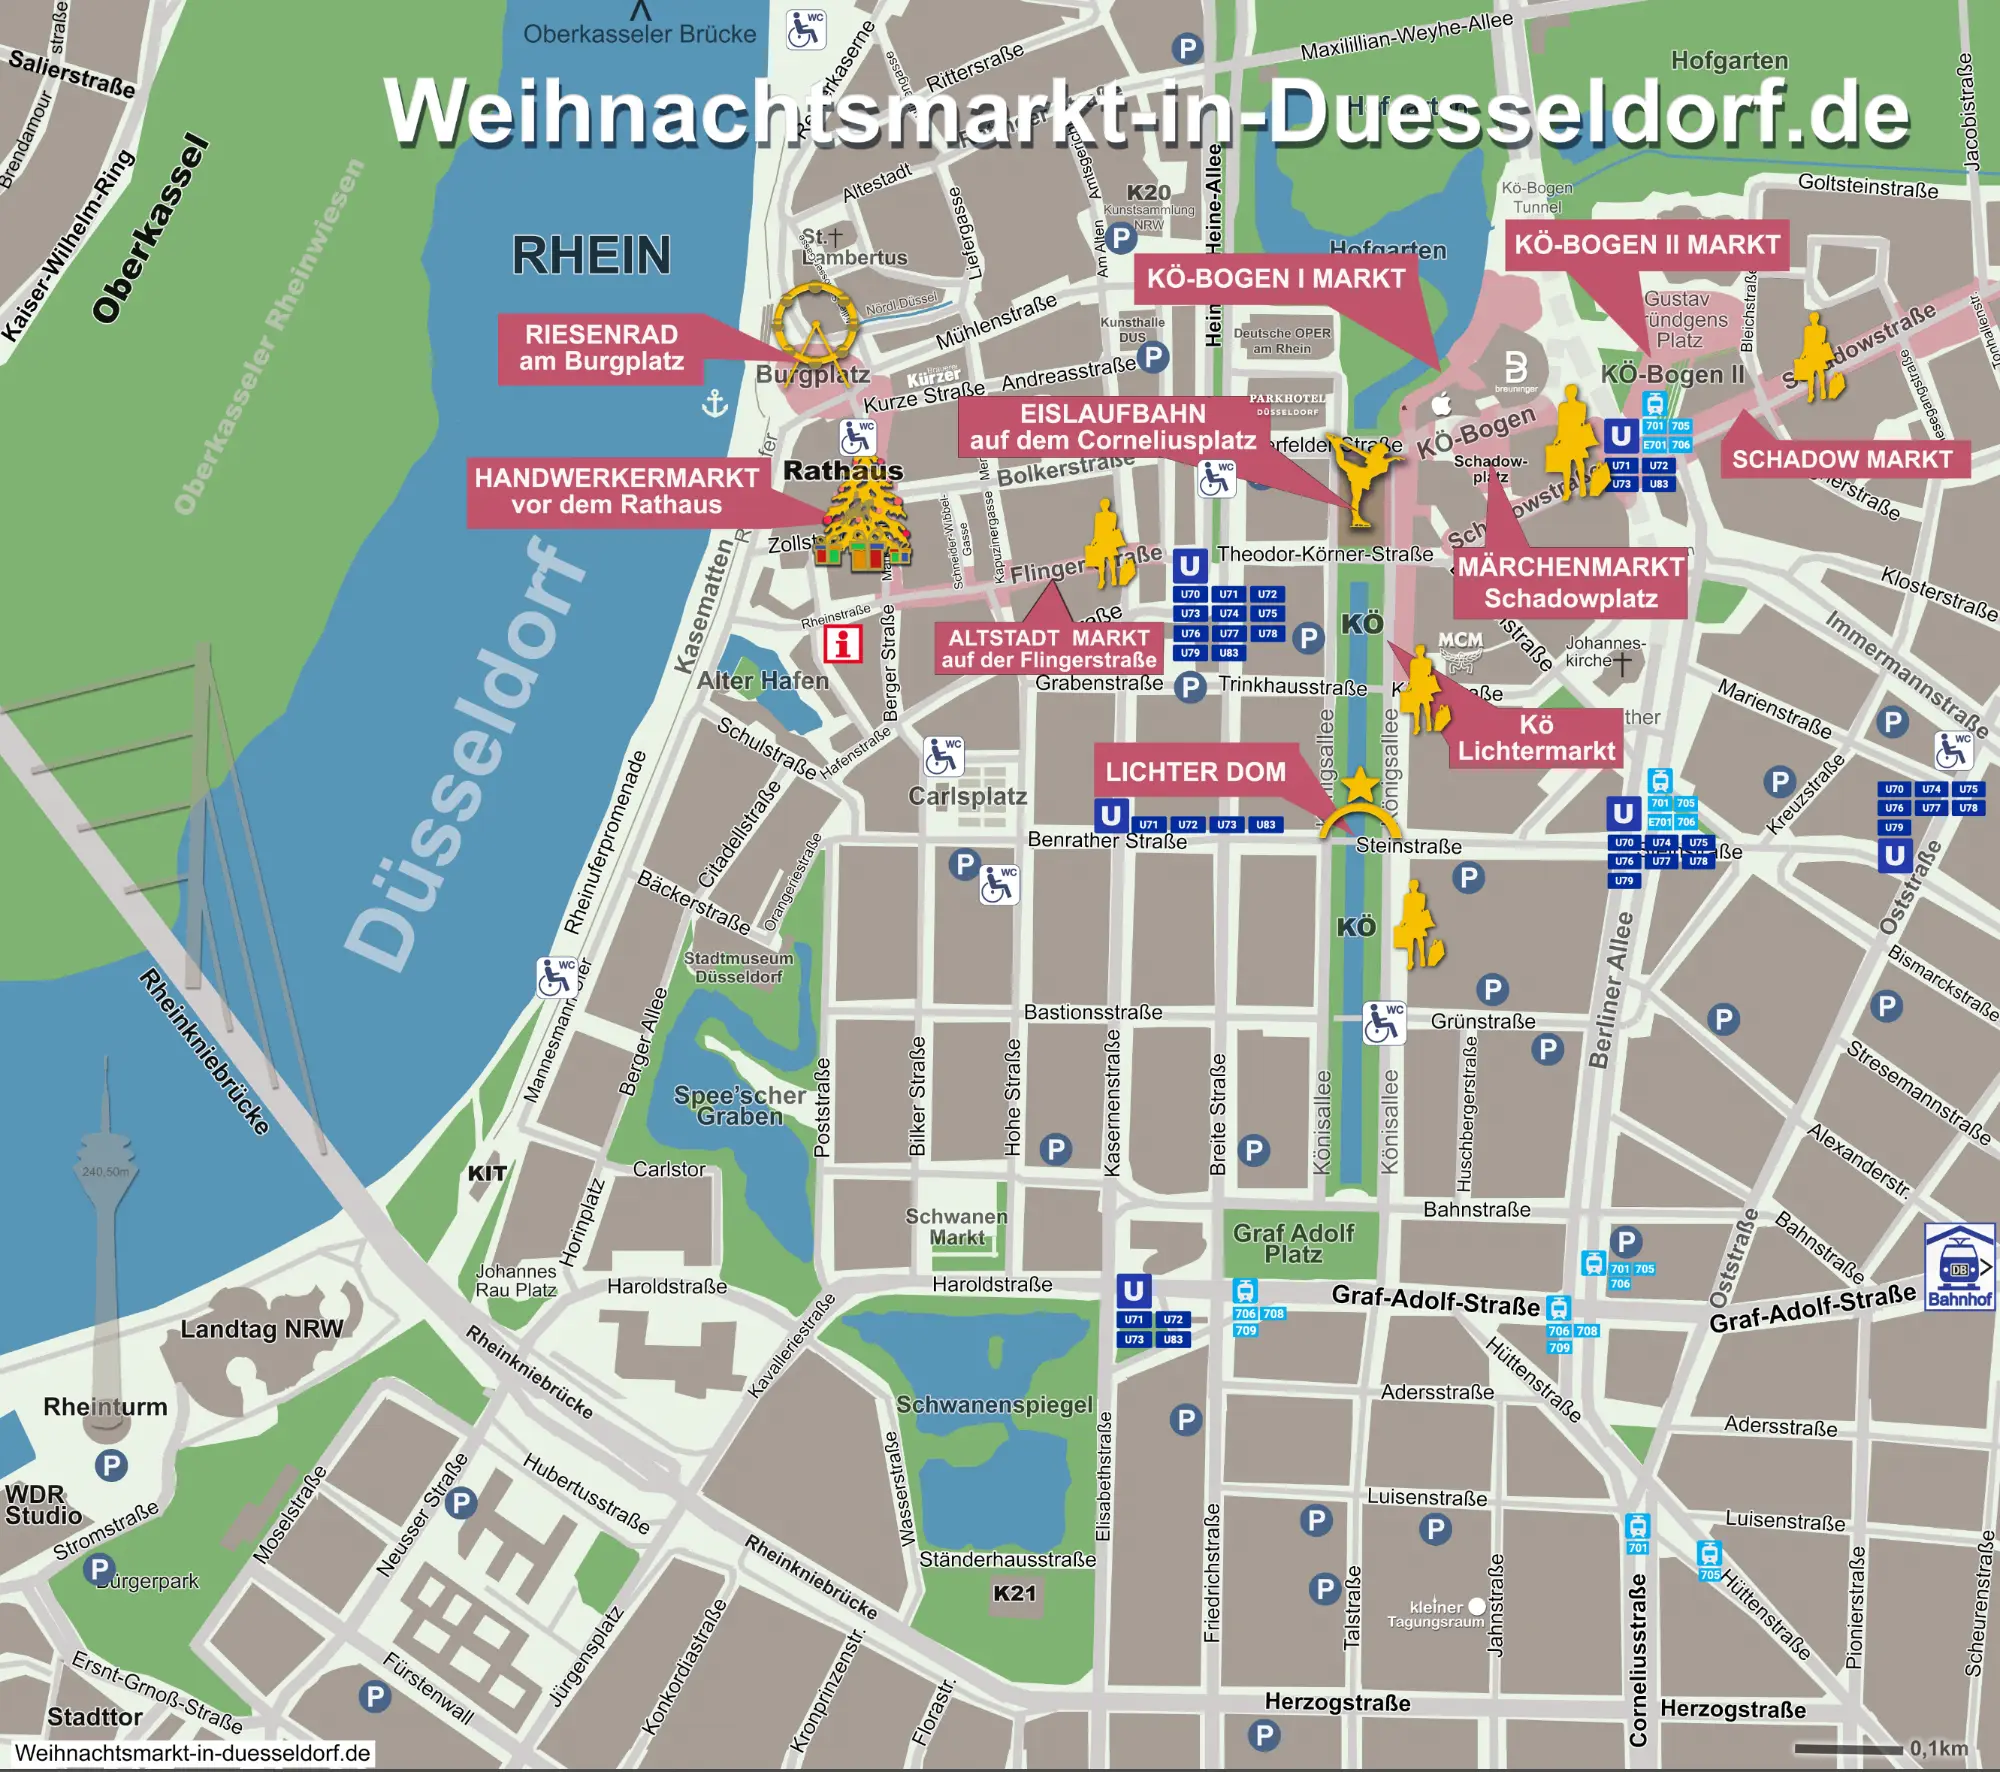 Anreise, Parken und Parkhäuser rund um den Weihnachtsmarkt in Düsseldorf 2023